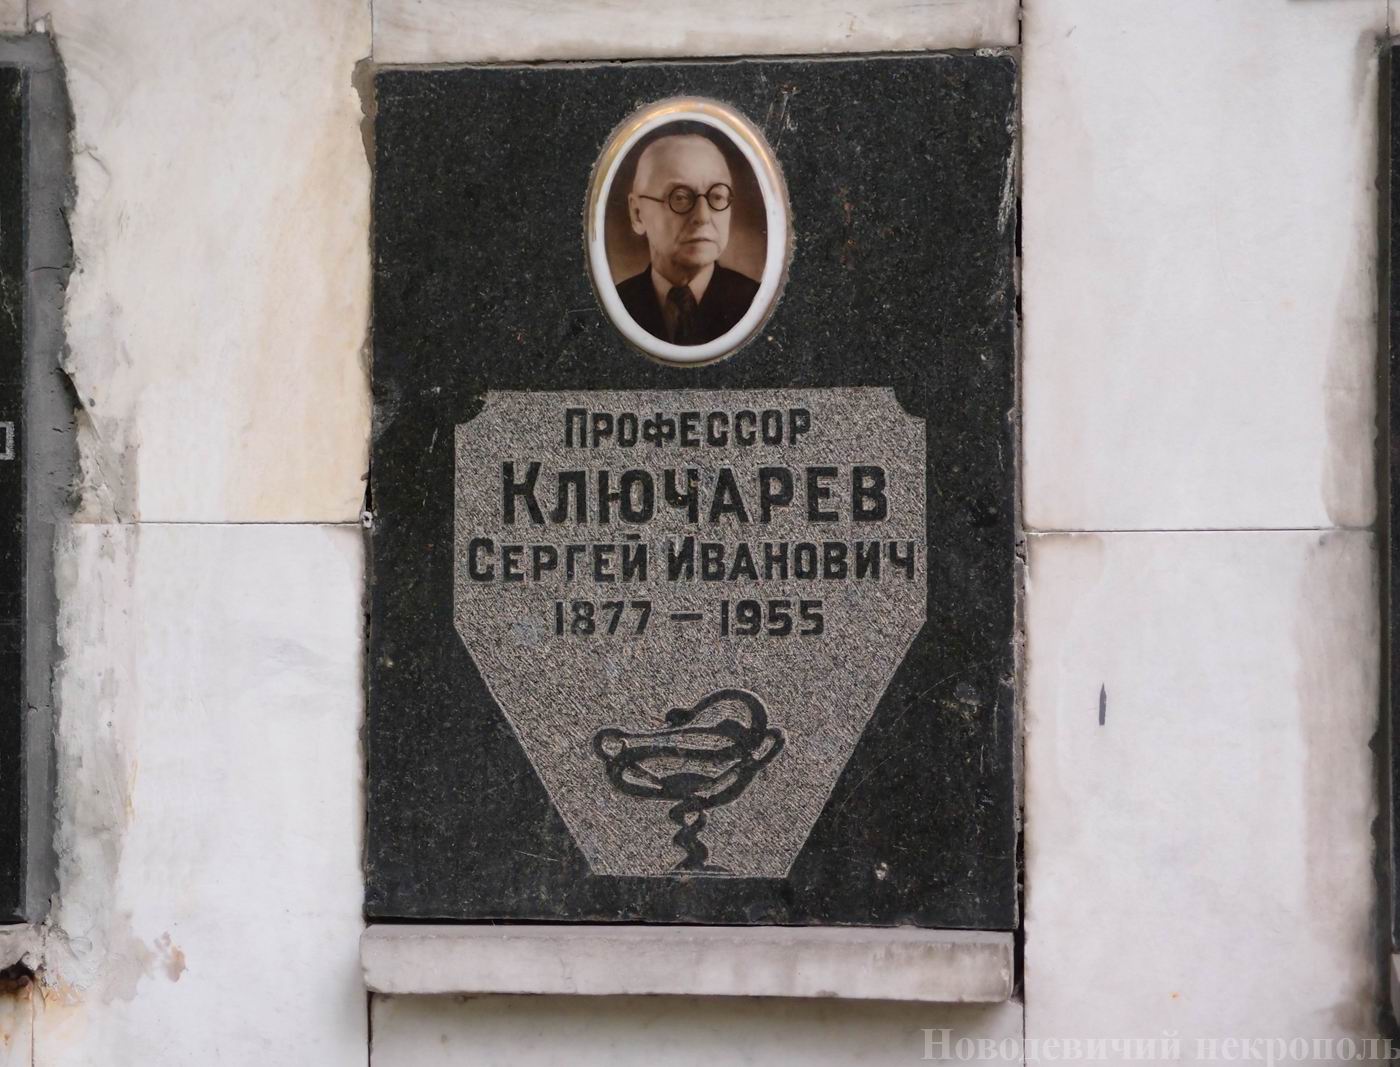 Плита на нише Ключарева С.И. (1877–1955), на Новодевичьем кладбище (колумбарий [109]–4–2).